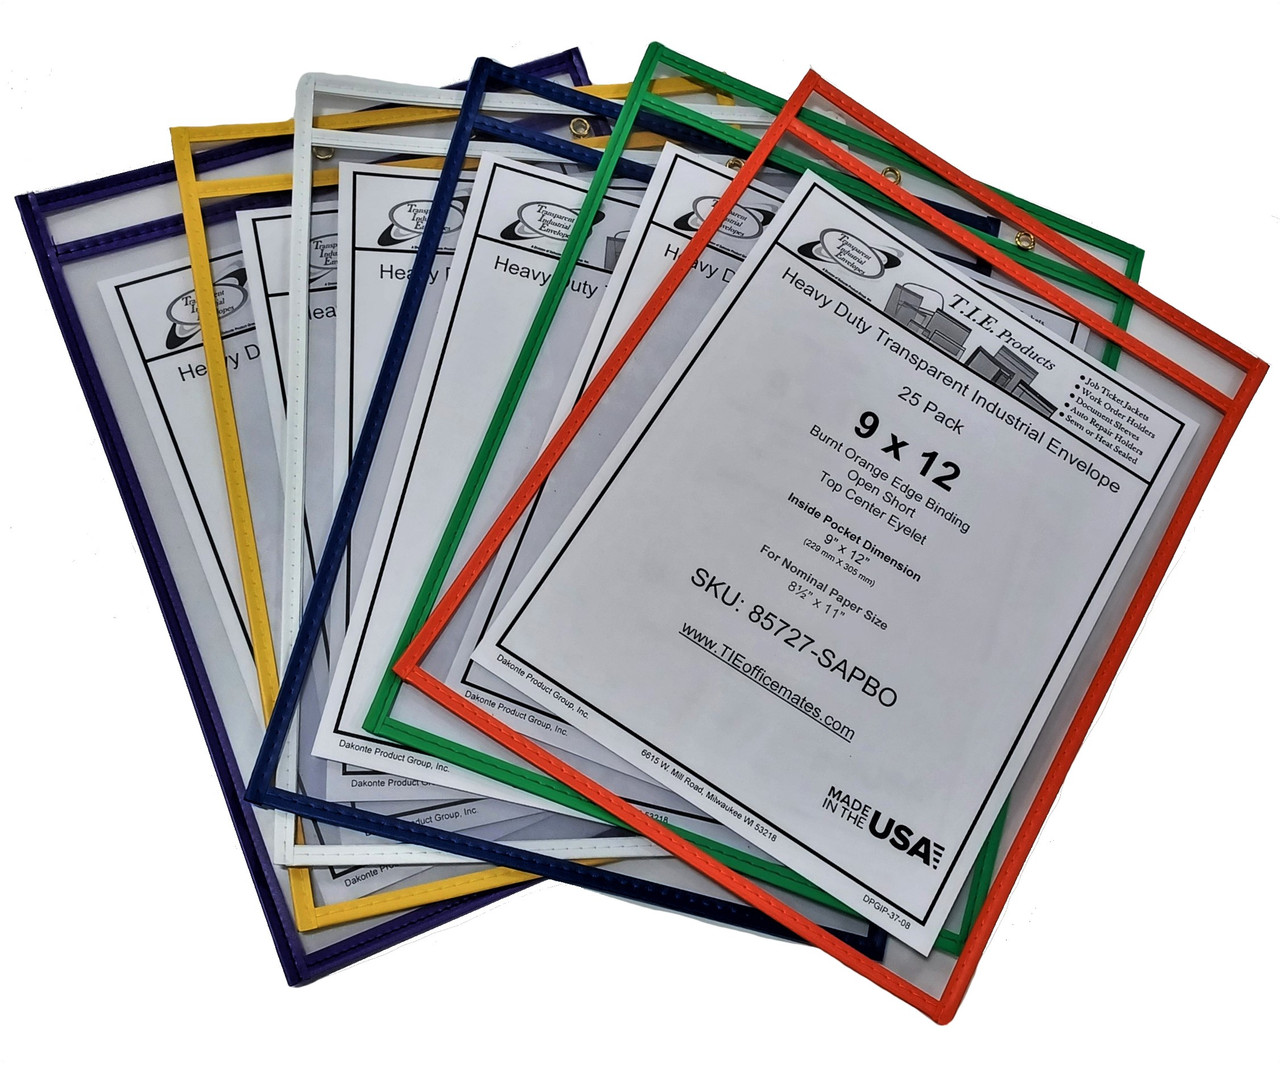 Paper Plan Job Ticker Holders - Plastic Sleeves for Paper 8.5x11 - Job Ticket Holders 9x12 - Work Order Plastic Sleeves - Shop Ticket Holders (6 Pack)